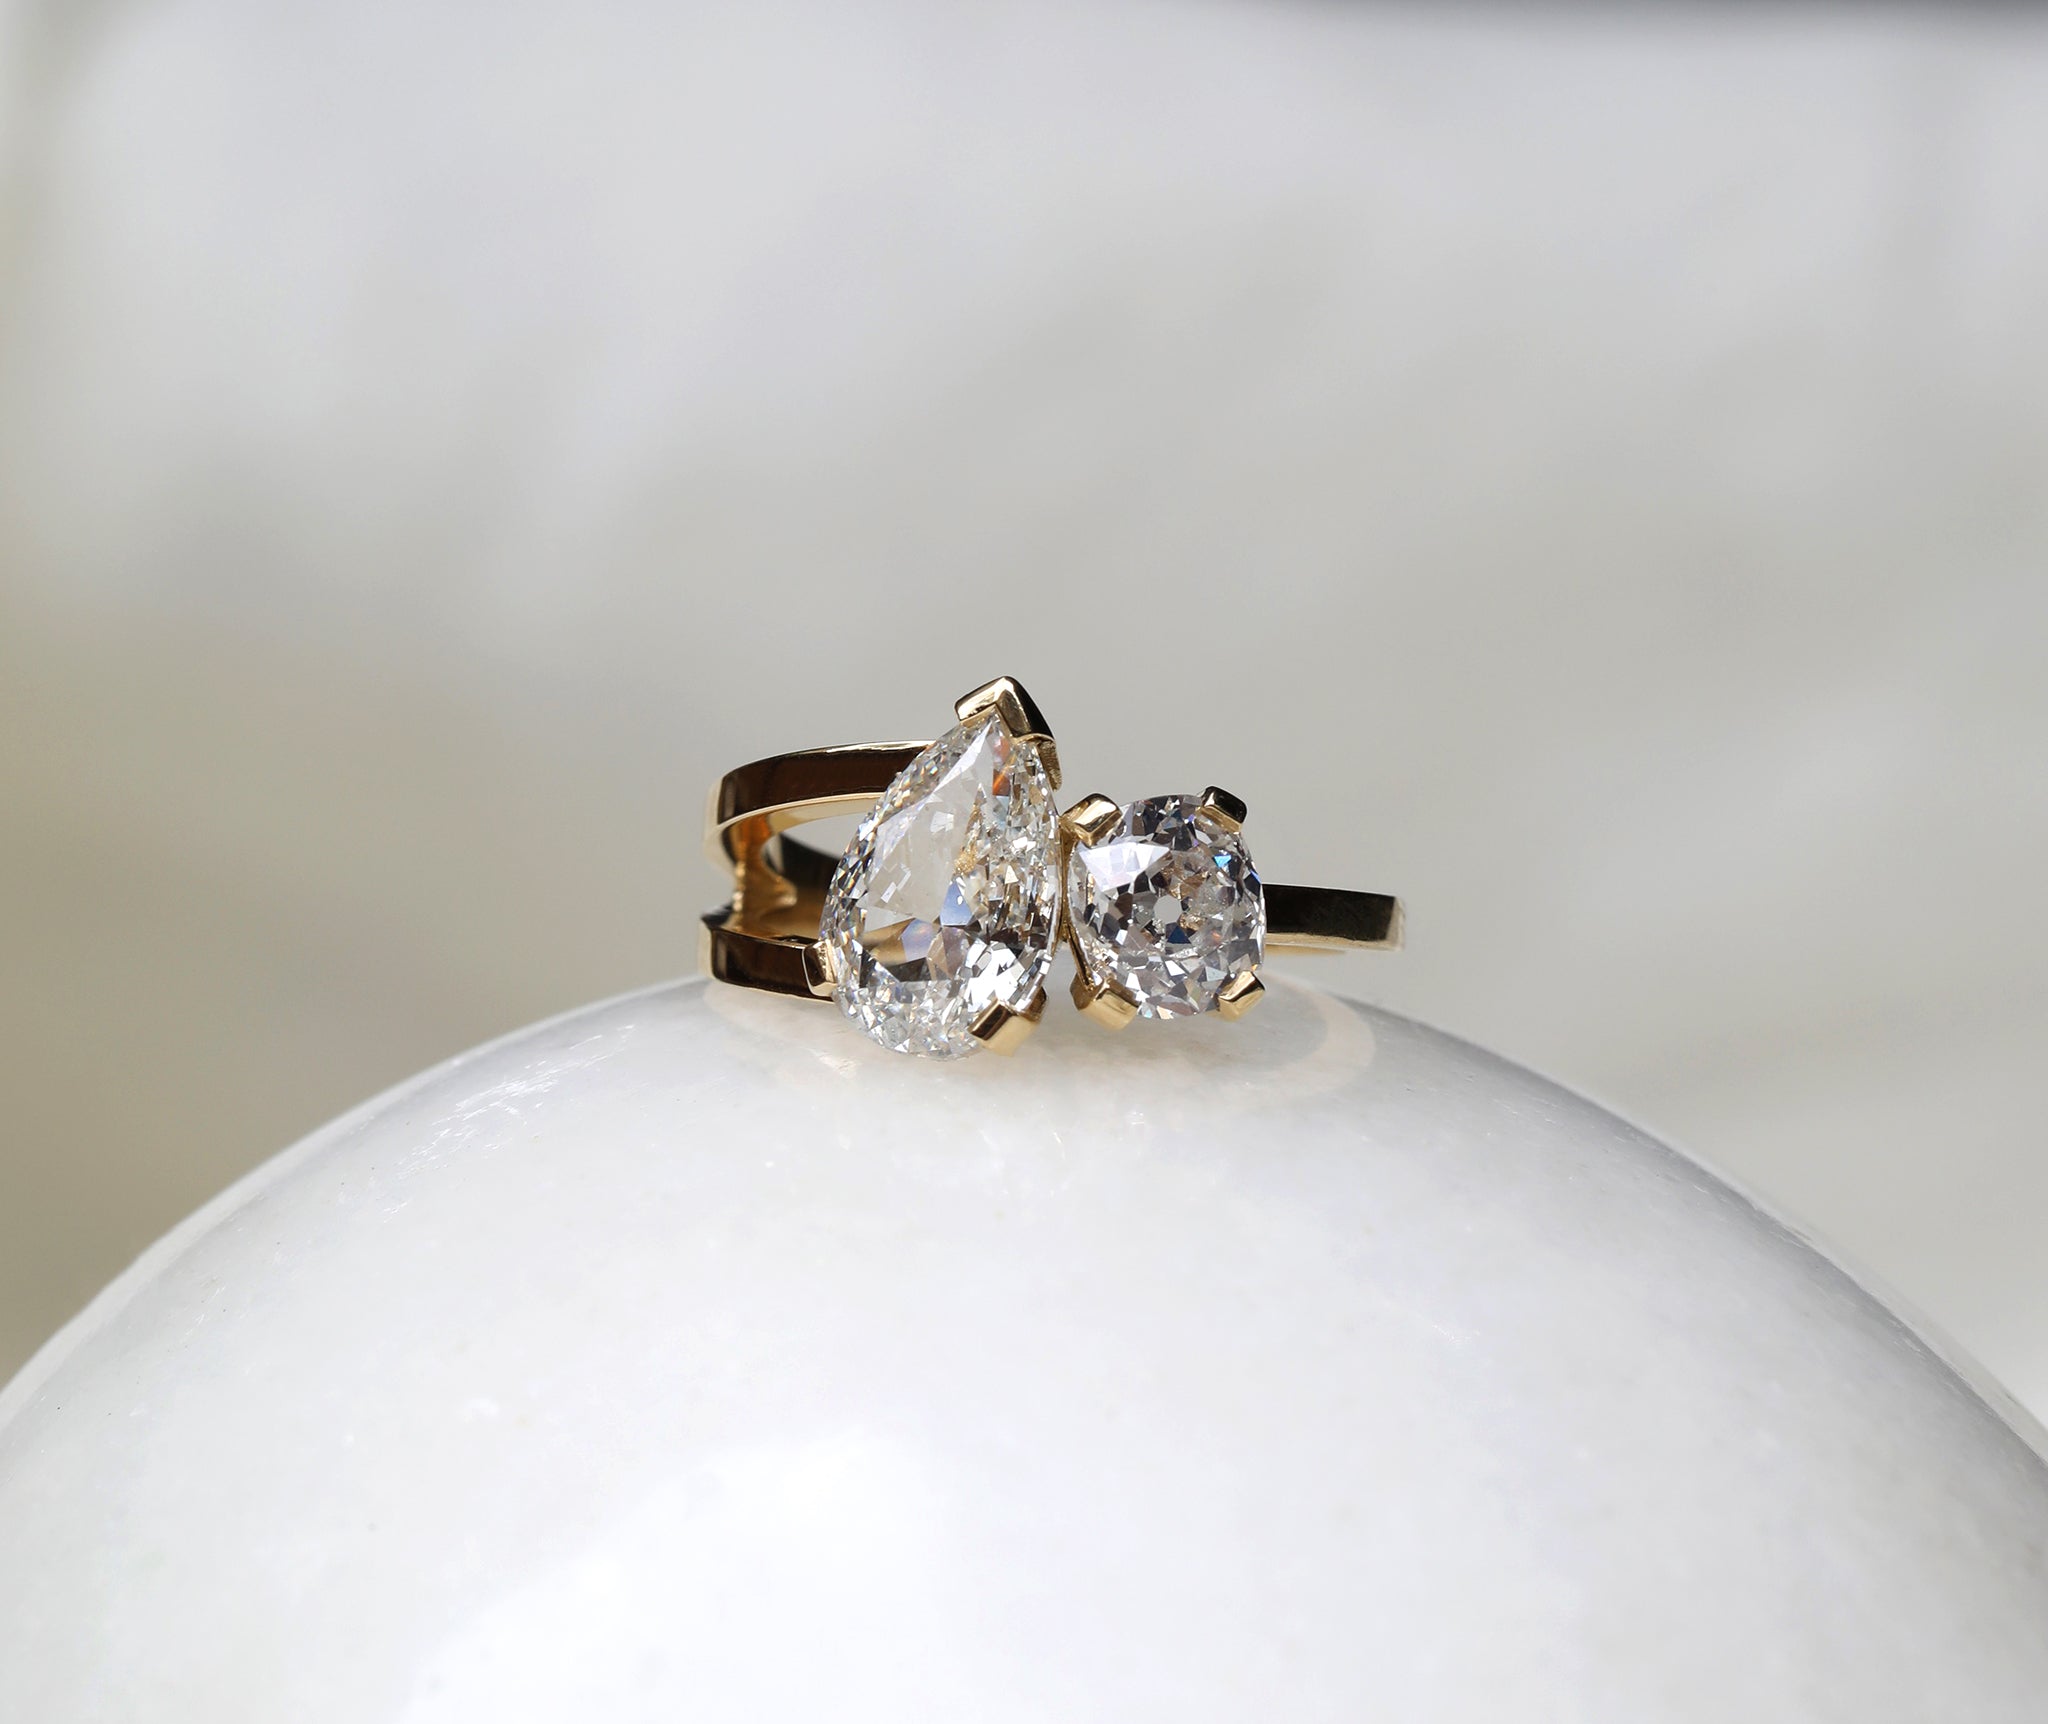 Bespoke Toi et Moi diamond engagement ring by East London jeweller Rachel Boston